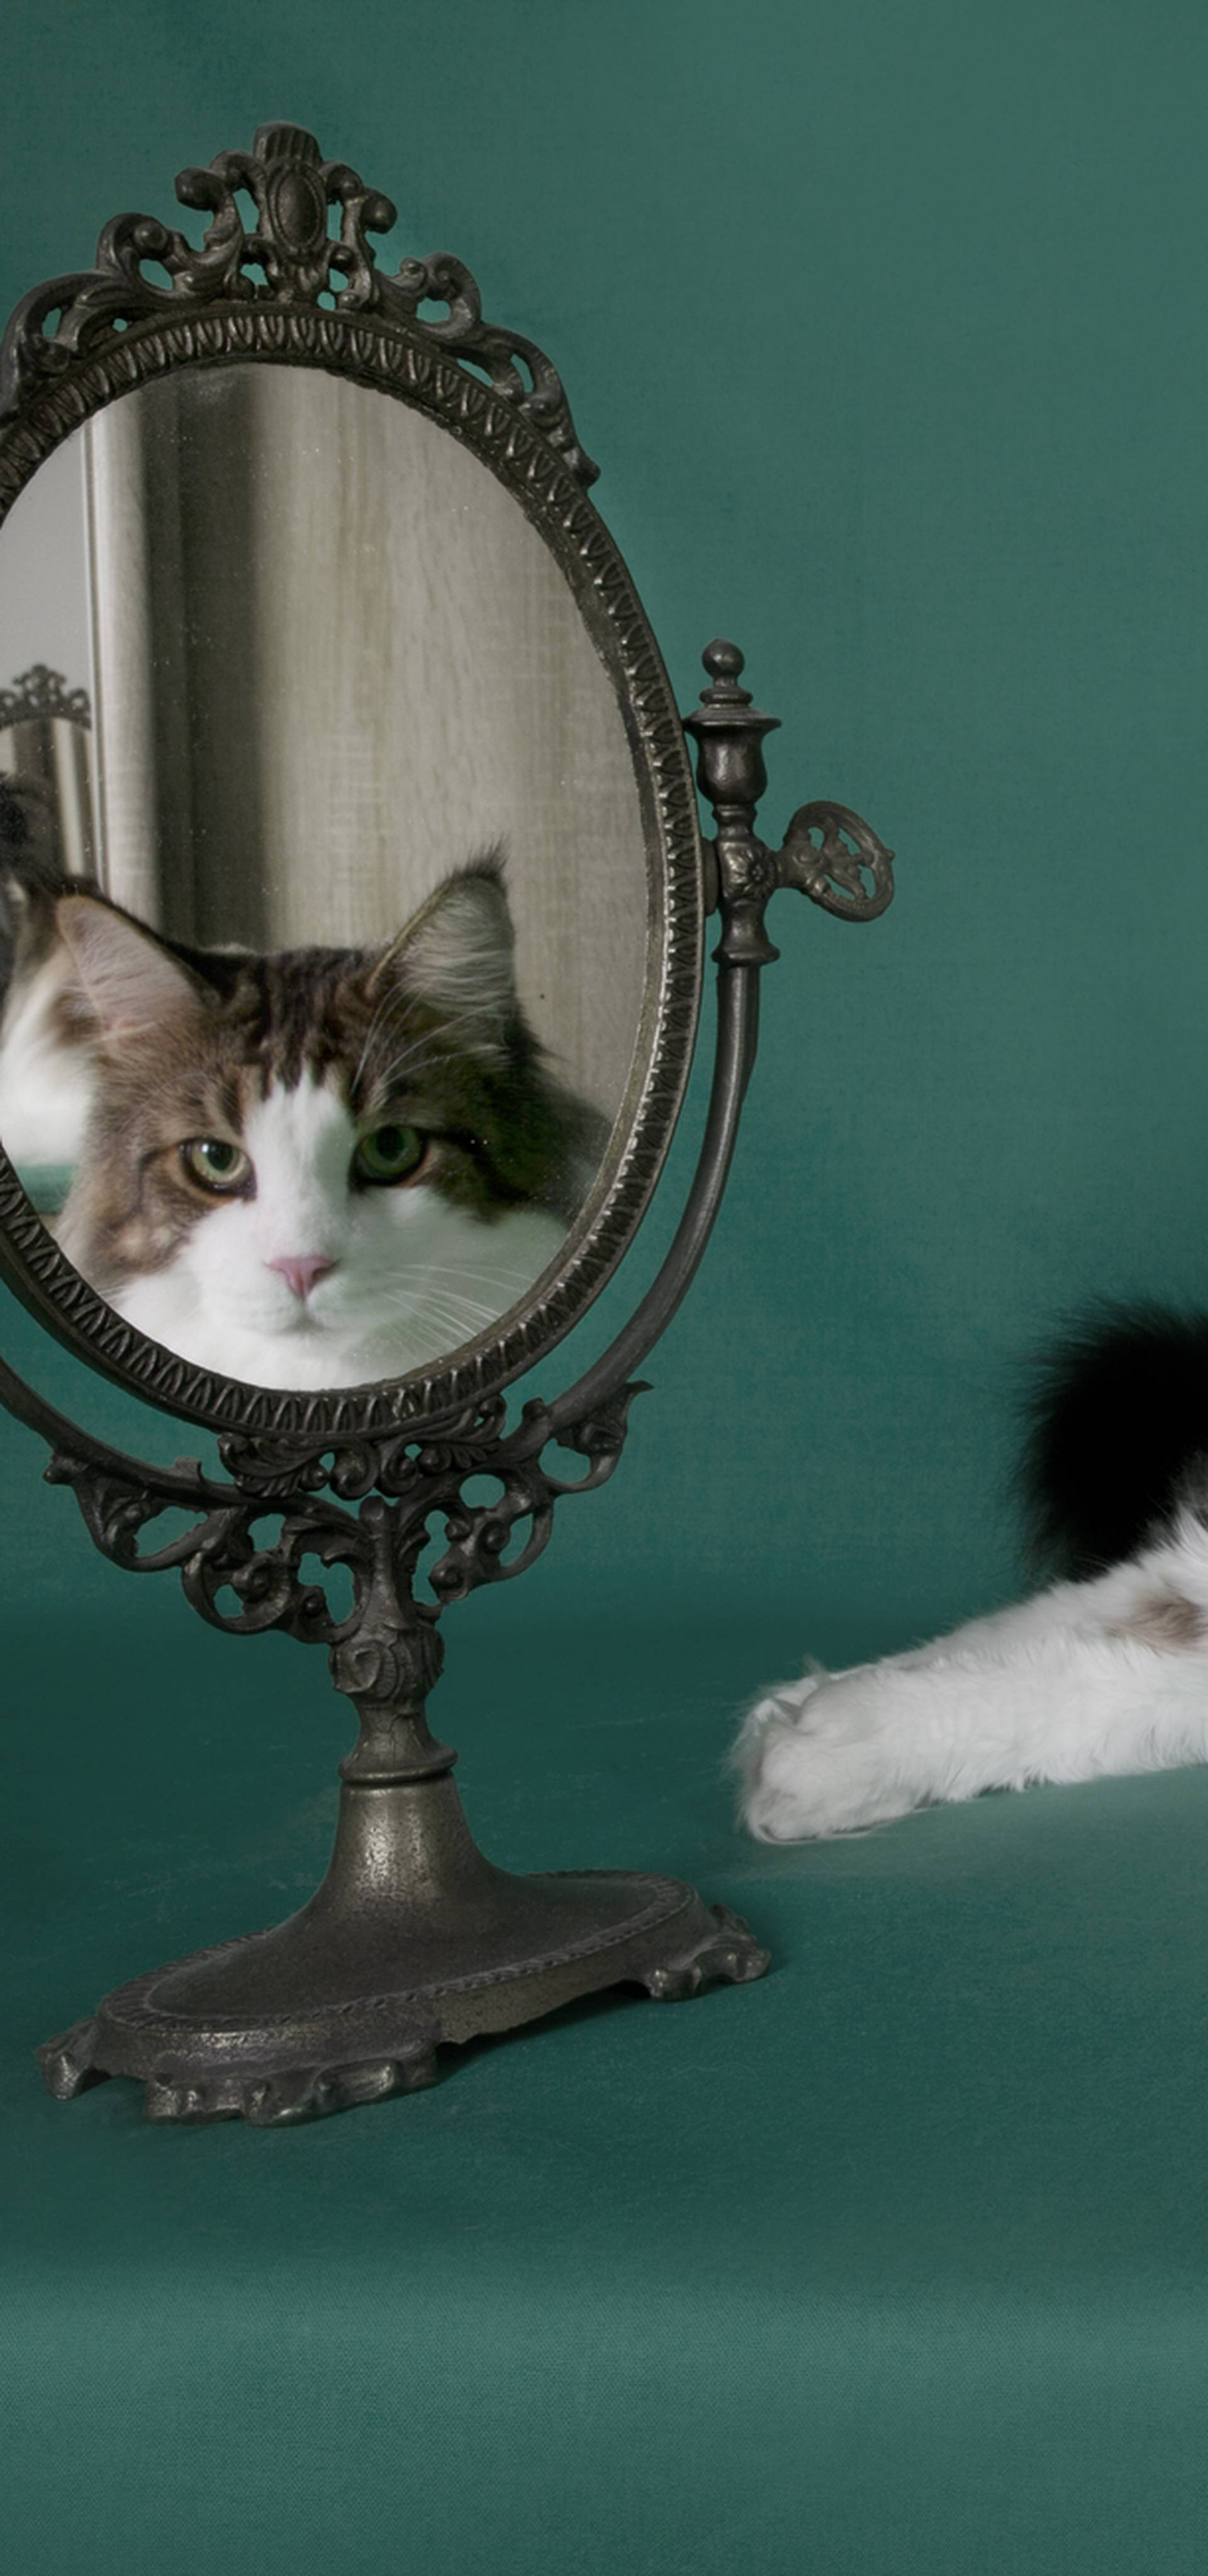 On je najtrofejniji mačak: 'Ja sam Grga i lijep sam k'o grijeh'